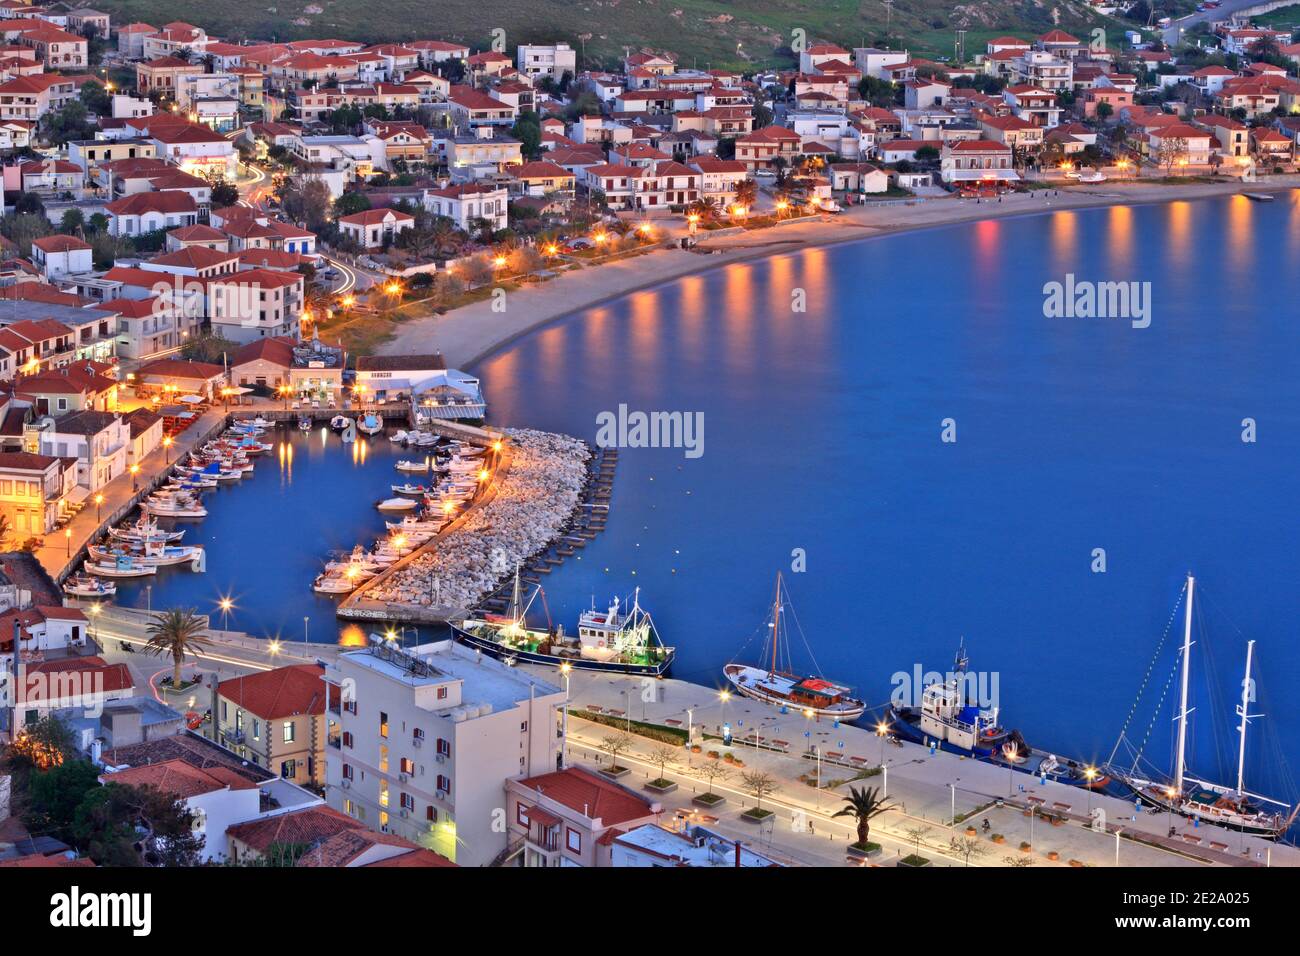 Ville de Myrina, la capitale de l'île de Lemnos, vue à l'heure bleue du château de la ville, à Lemnos, Grèce, Europe Banque D'Images